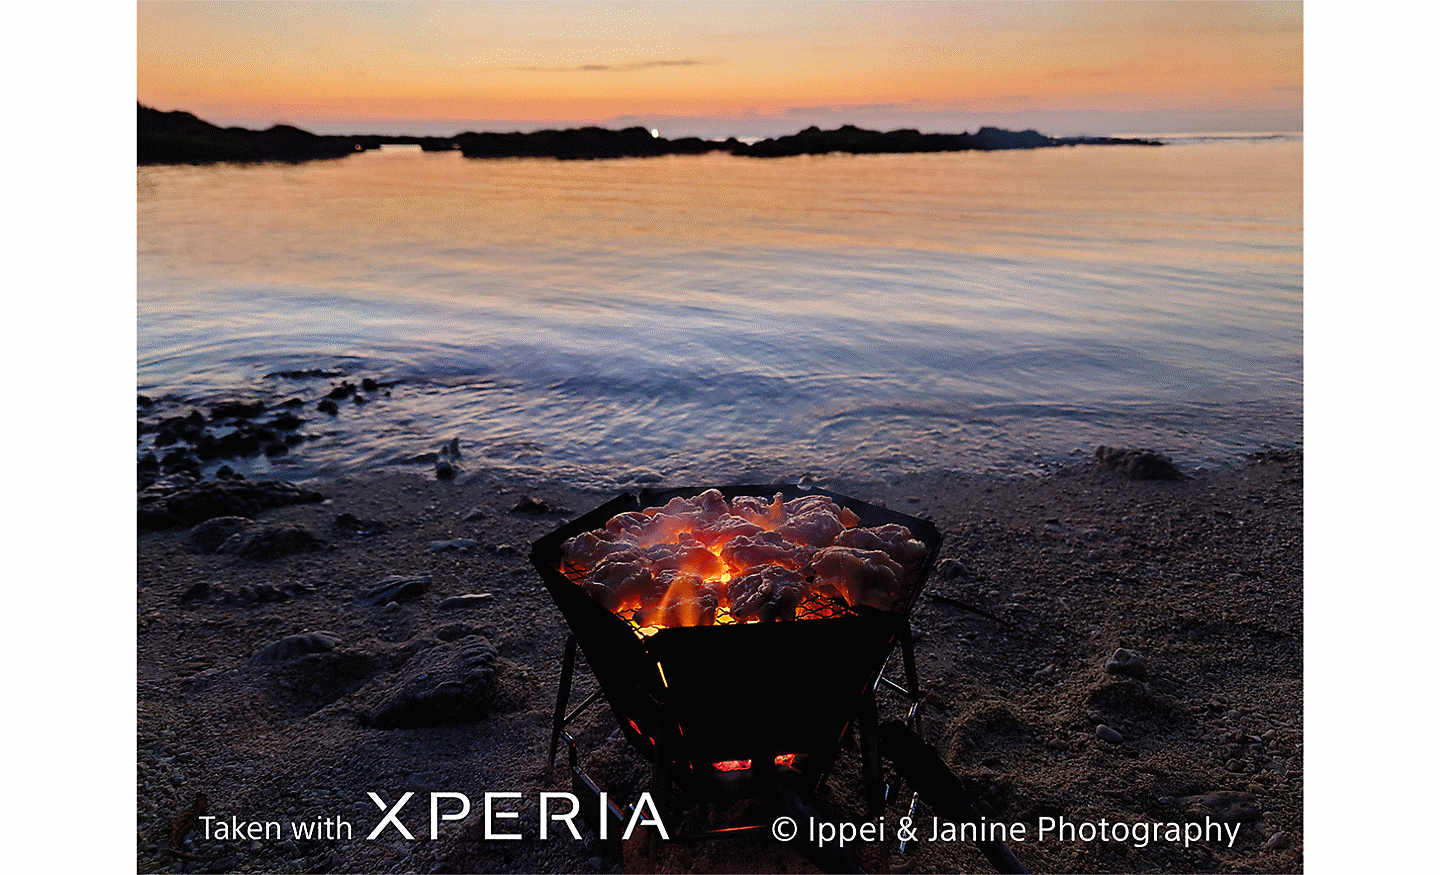 Horiace ohnisko na pláži so slnkom zapadajúcim za more. Na fotografii sa nachádza text Taken with XPERIA ©Ippei & Janine Photography.